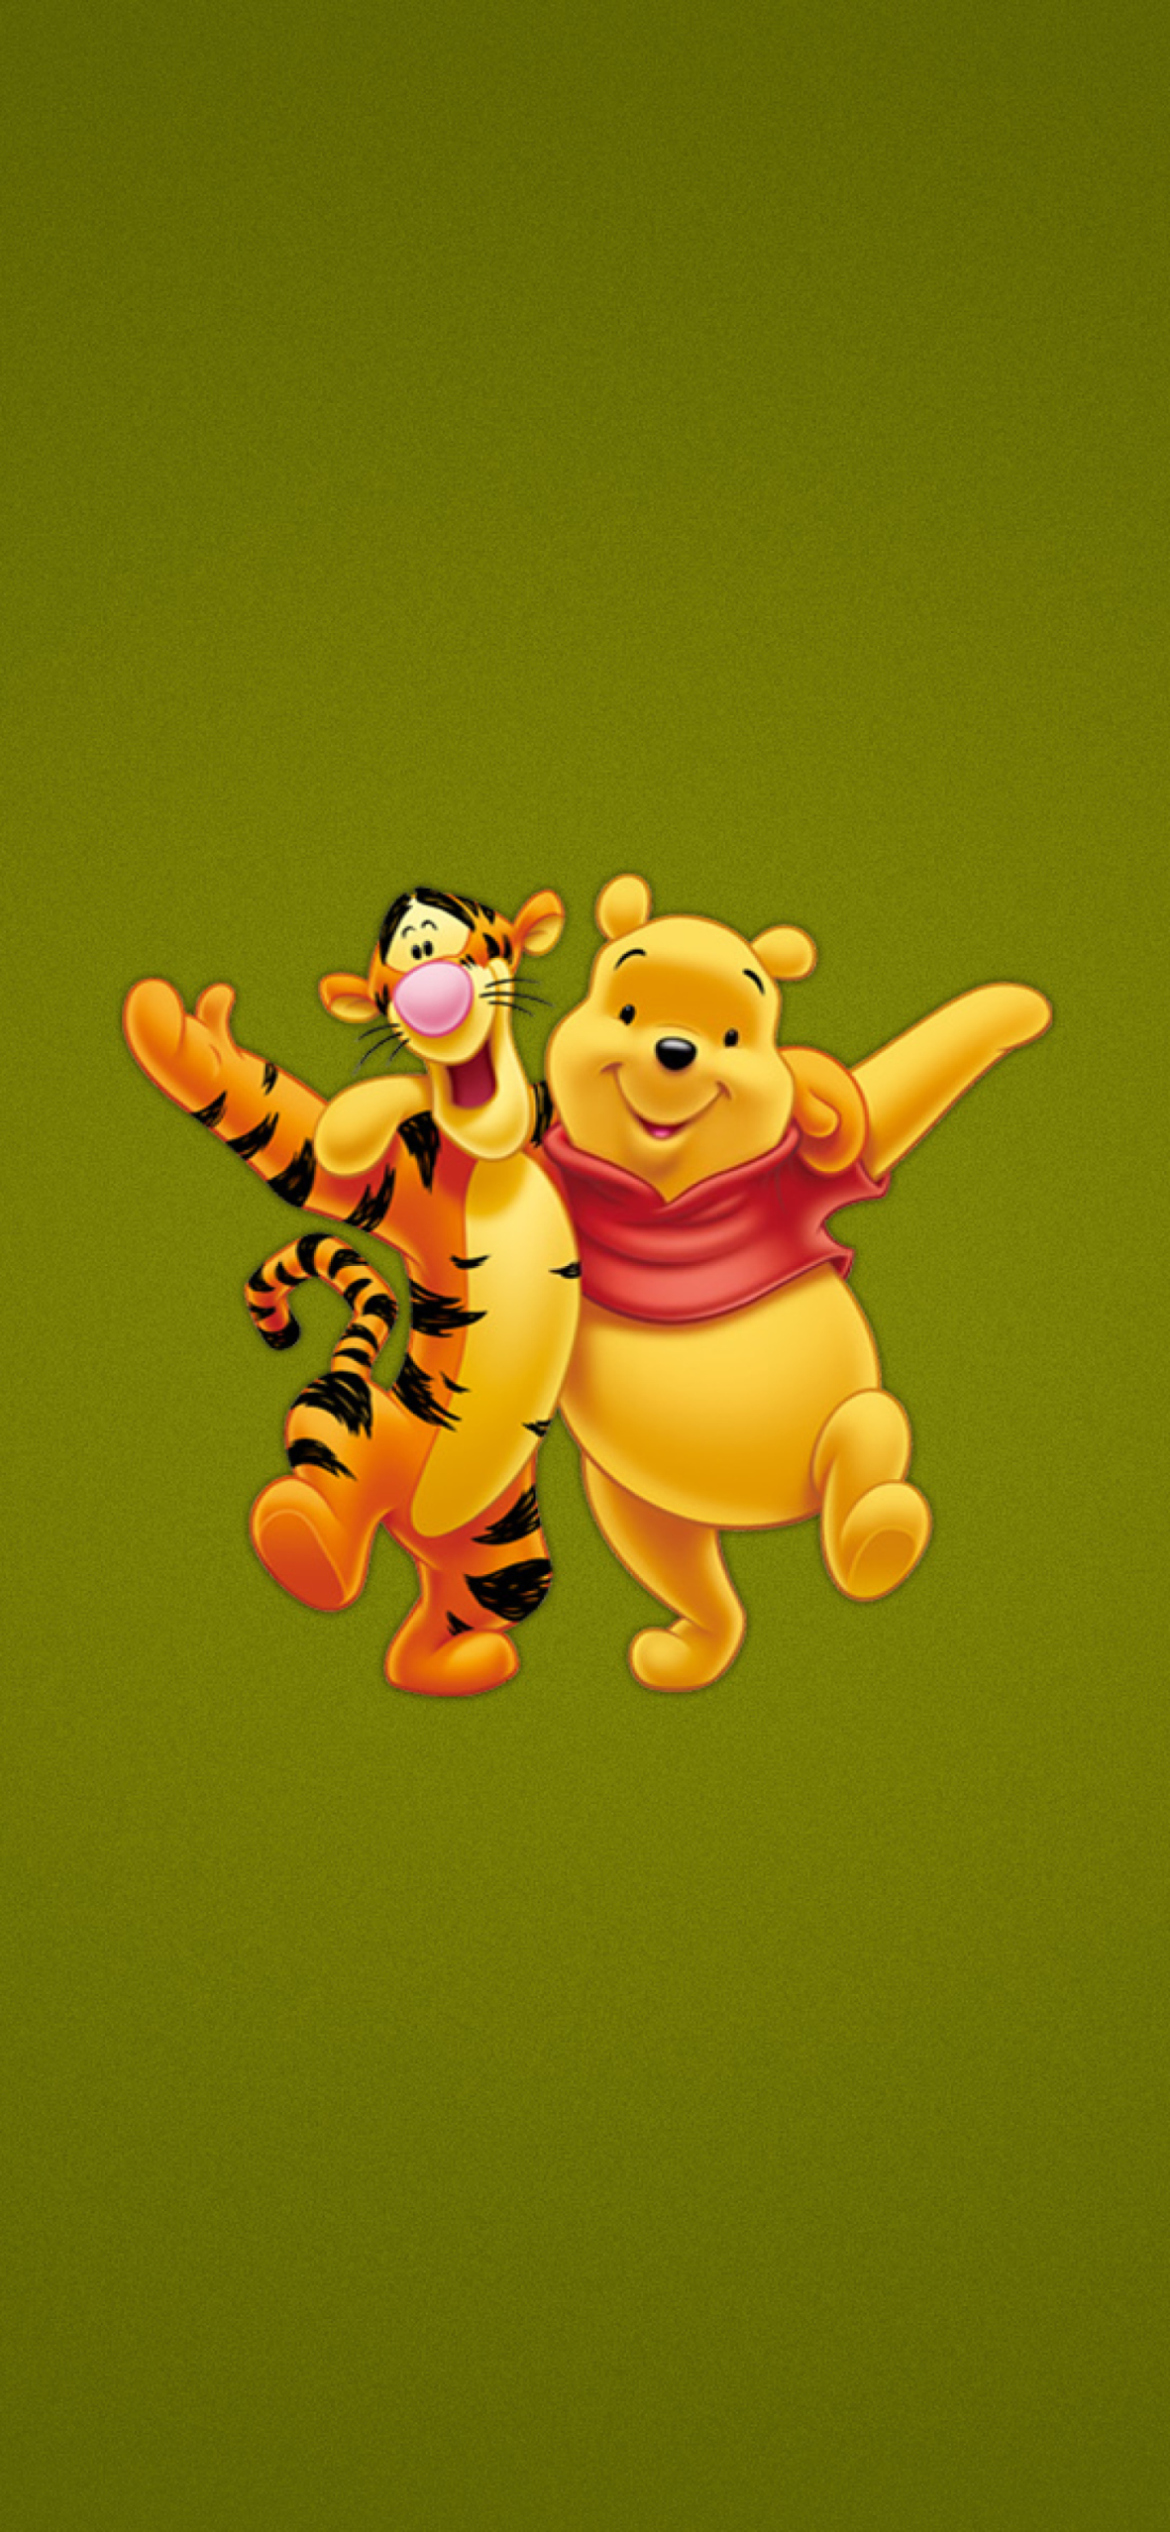 Sfondi Winnie The Pooh And Tiger 1170x2532